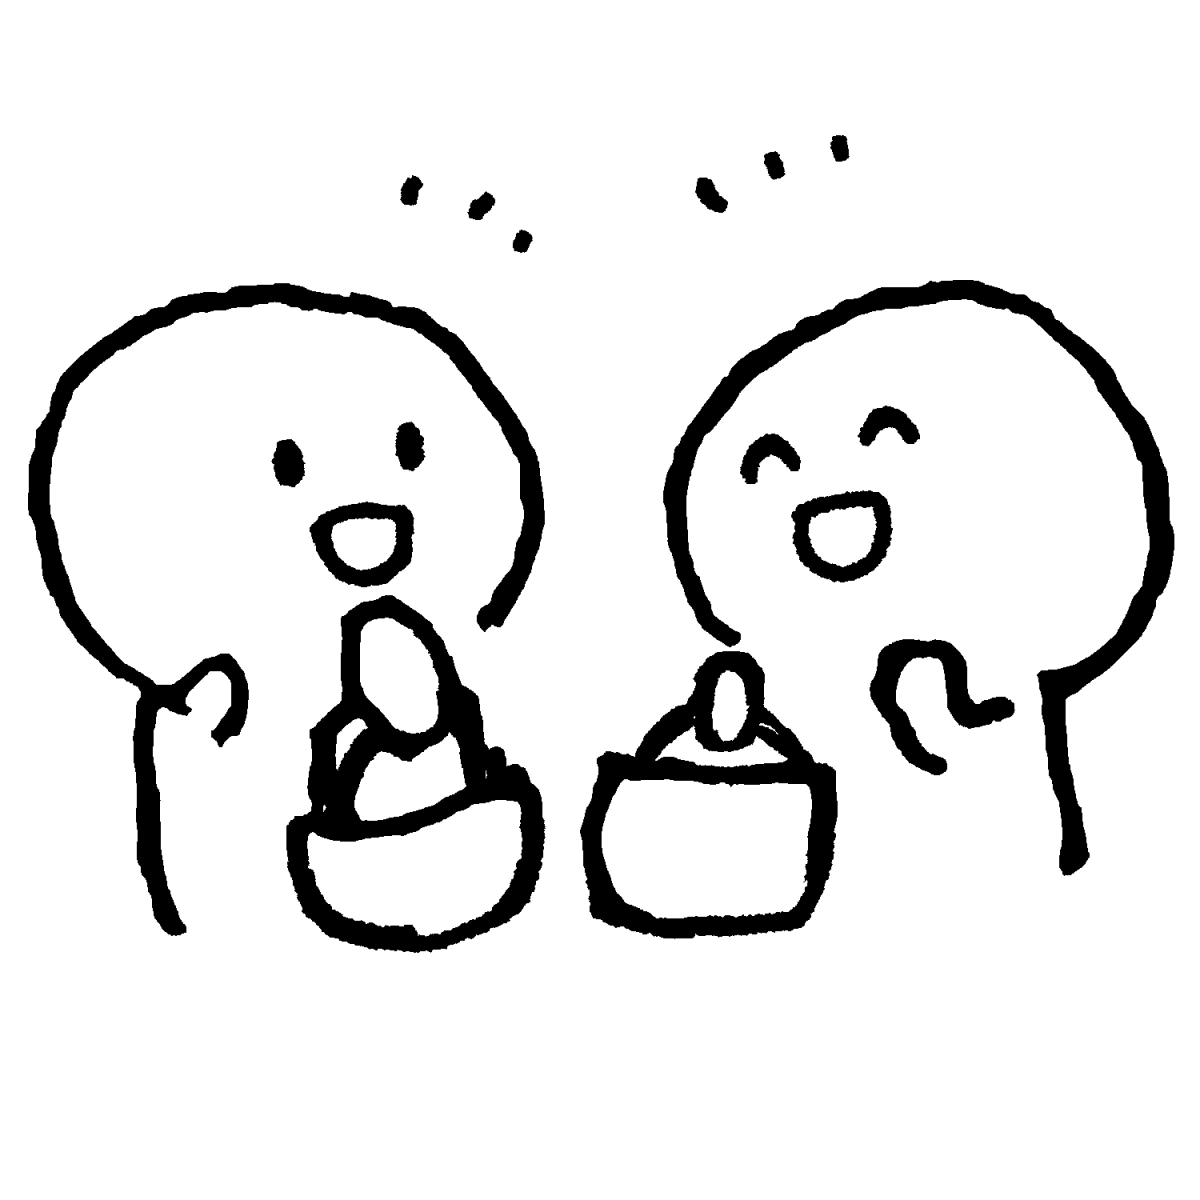 井戸端会議のイラスト / Housewife Conversation Illustration